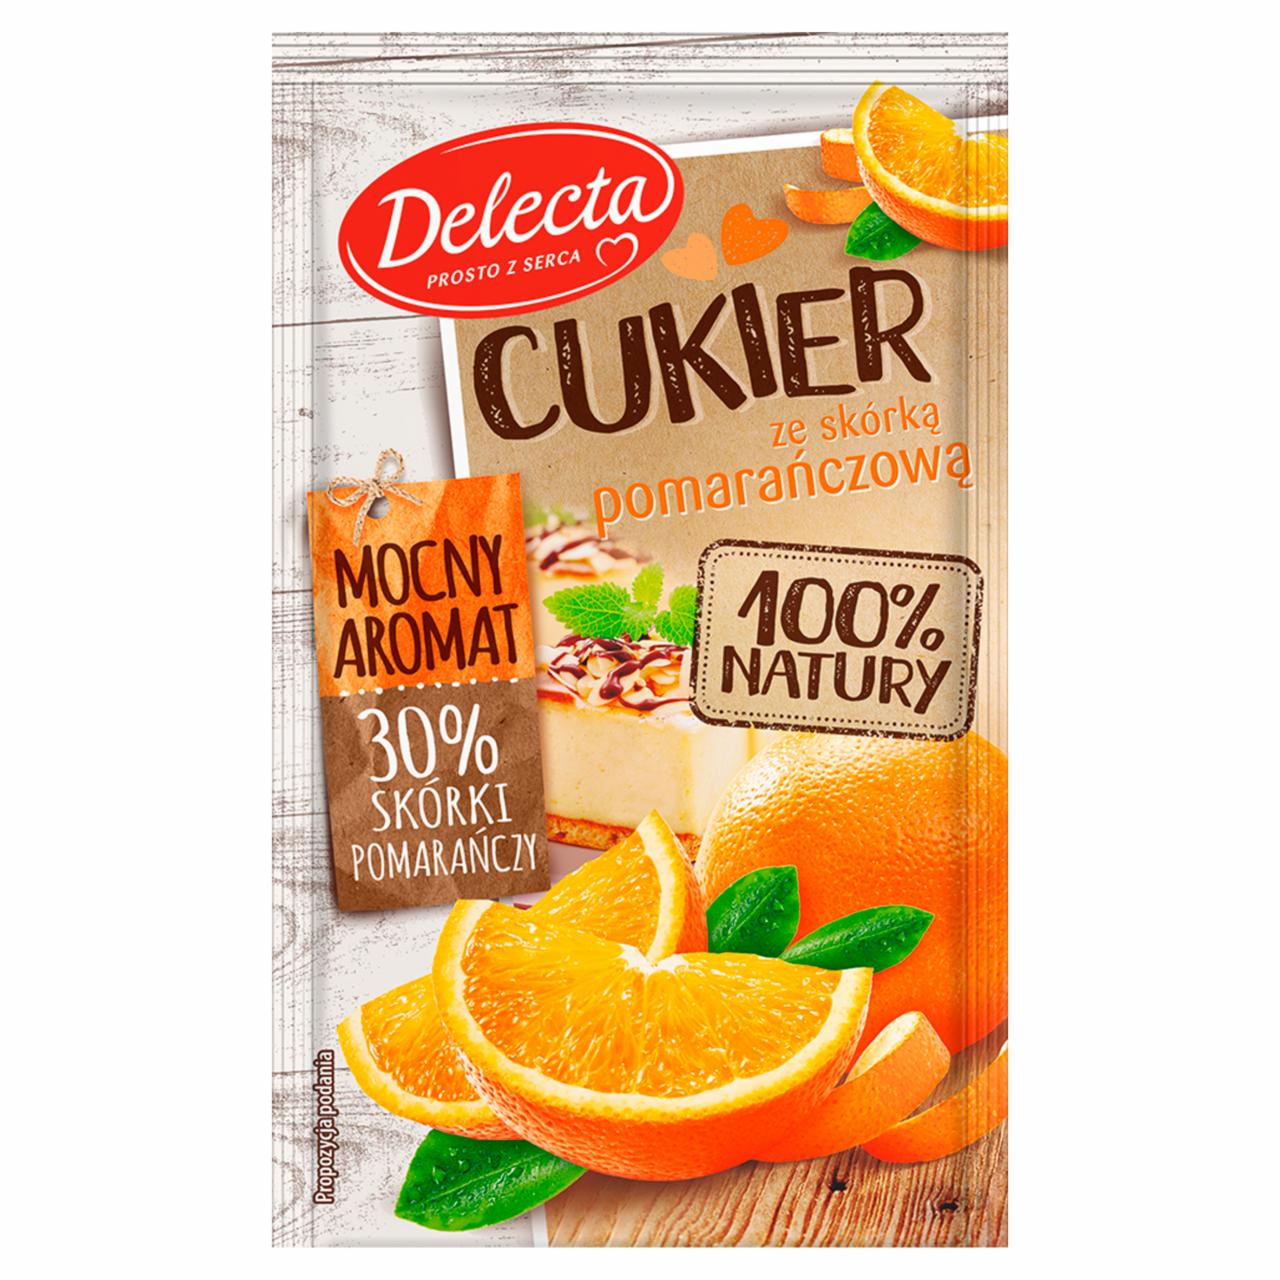 Zdjęcia - Delecta Premium Cukier ze skórką pomarańczową 15 g